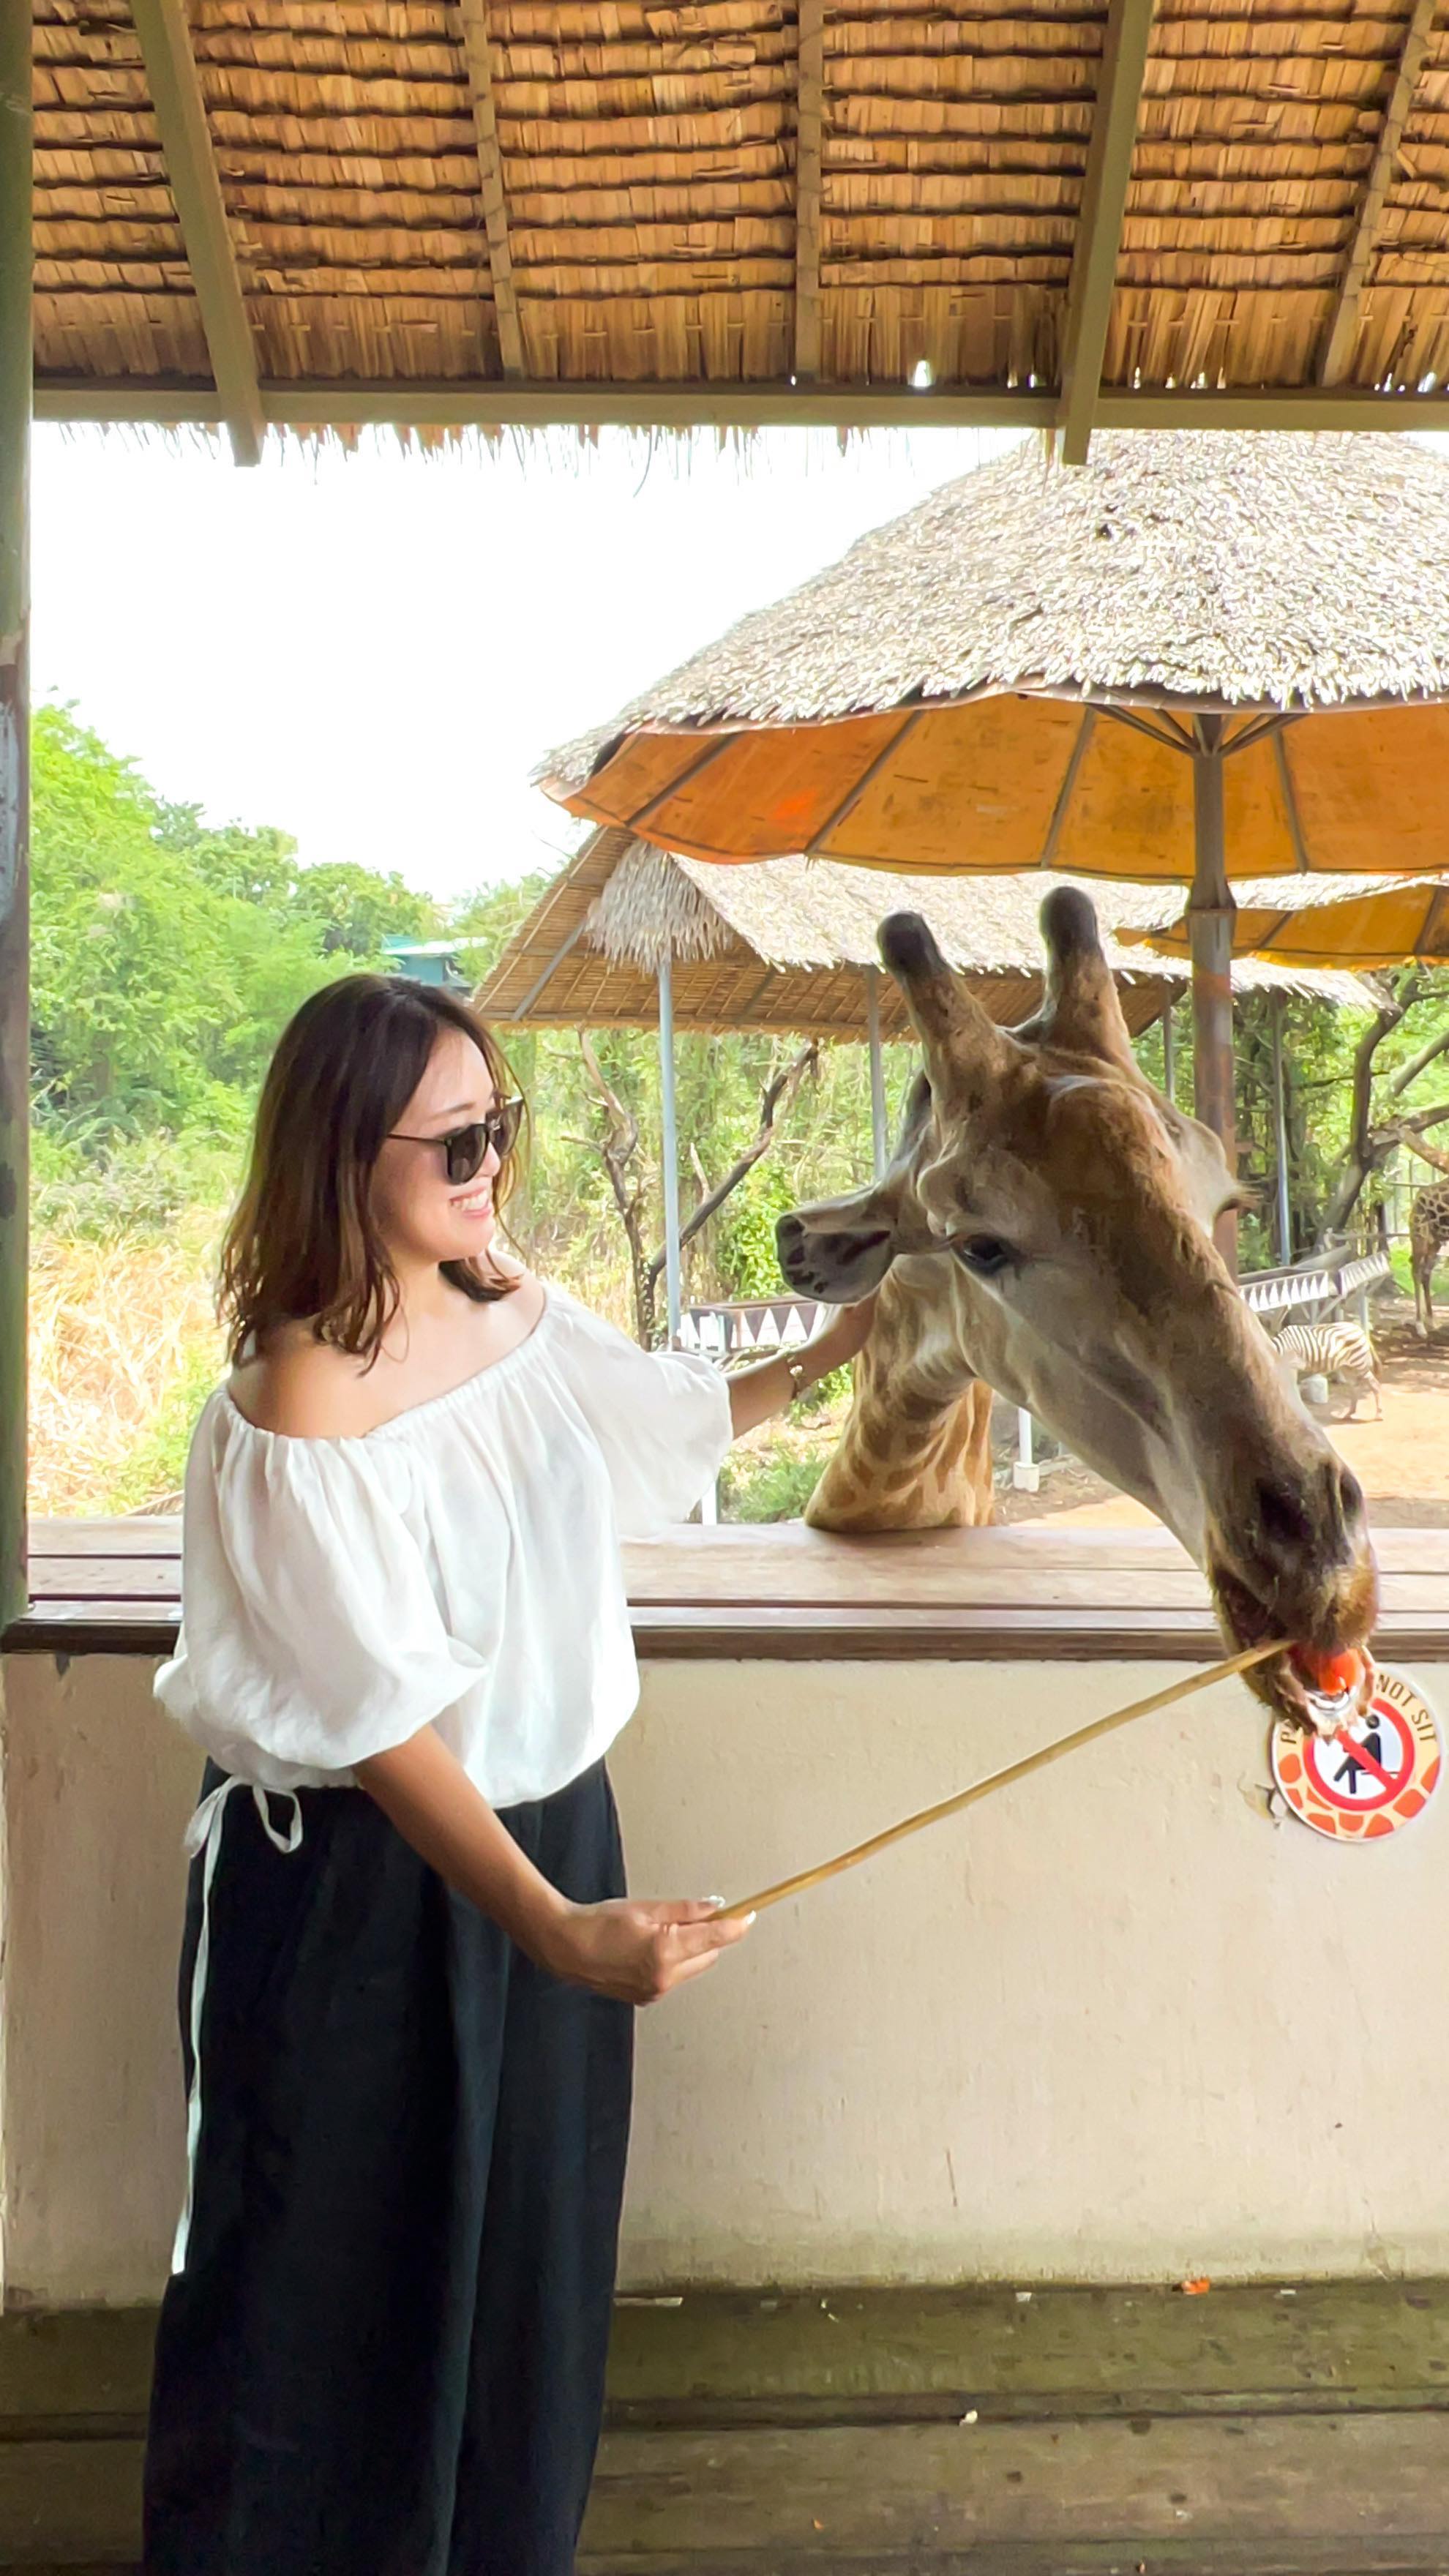 ⁡
⁡
🦒🦒💛
Giraffe feeding in Bangkok Safari World🚎
⁡
⁡
タイバンコクでいつかは行きたいと思っていた
サファリワールドでのキリンの餌付け。
いろいろ言いたいことはあるけれど…
⁡
とりあえず頭上からのよだれに注意🫧🫧
⁡
⁡
__🎥video credit________________
⁡
📍 Safari World ,🇹🇭
🗓 April, 2023
⁡
for more Bangkok photos
▶︎ #michelletraveldiary_Bangkok
⁡
_______________________________
⁡
⁡
⁡
#thailand#bangkok#safariworld#giraffe#giraffefeeding#タイ旅行#タイ#amazingthailand #tabimuse#lovetabimama#バンコク旅行#サファリワールドバンコク #サファリワールド#きりん#餌付け#餌やり体験 #🦒